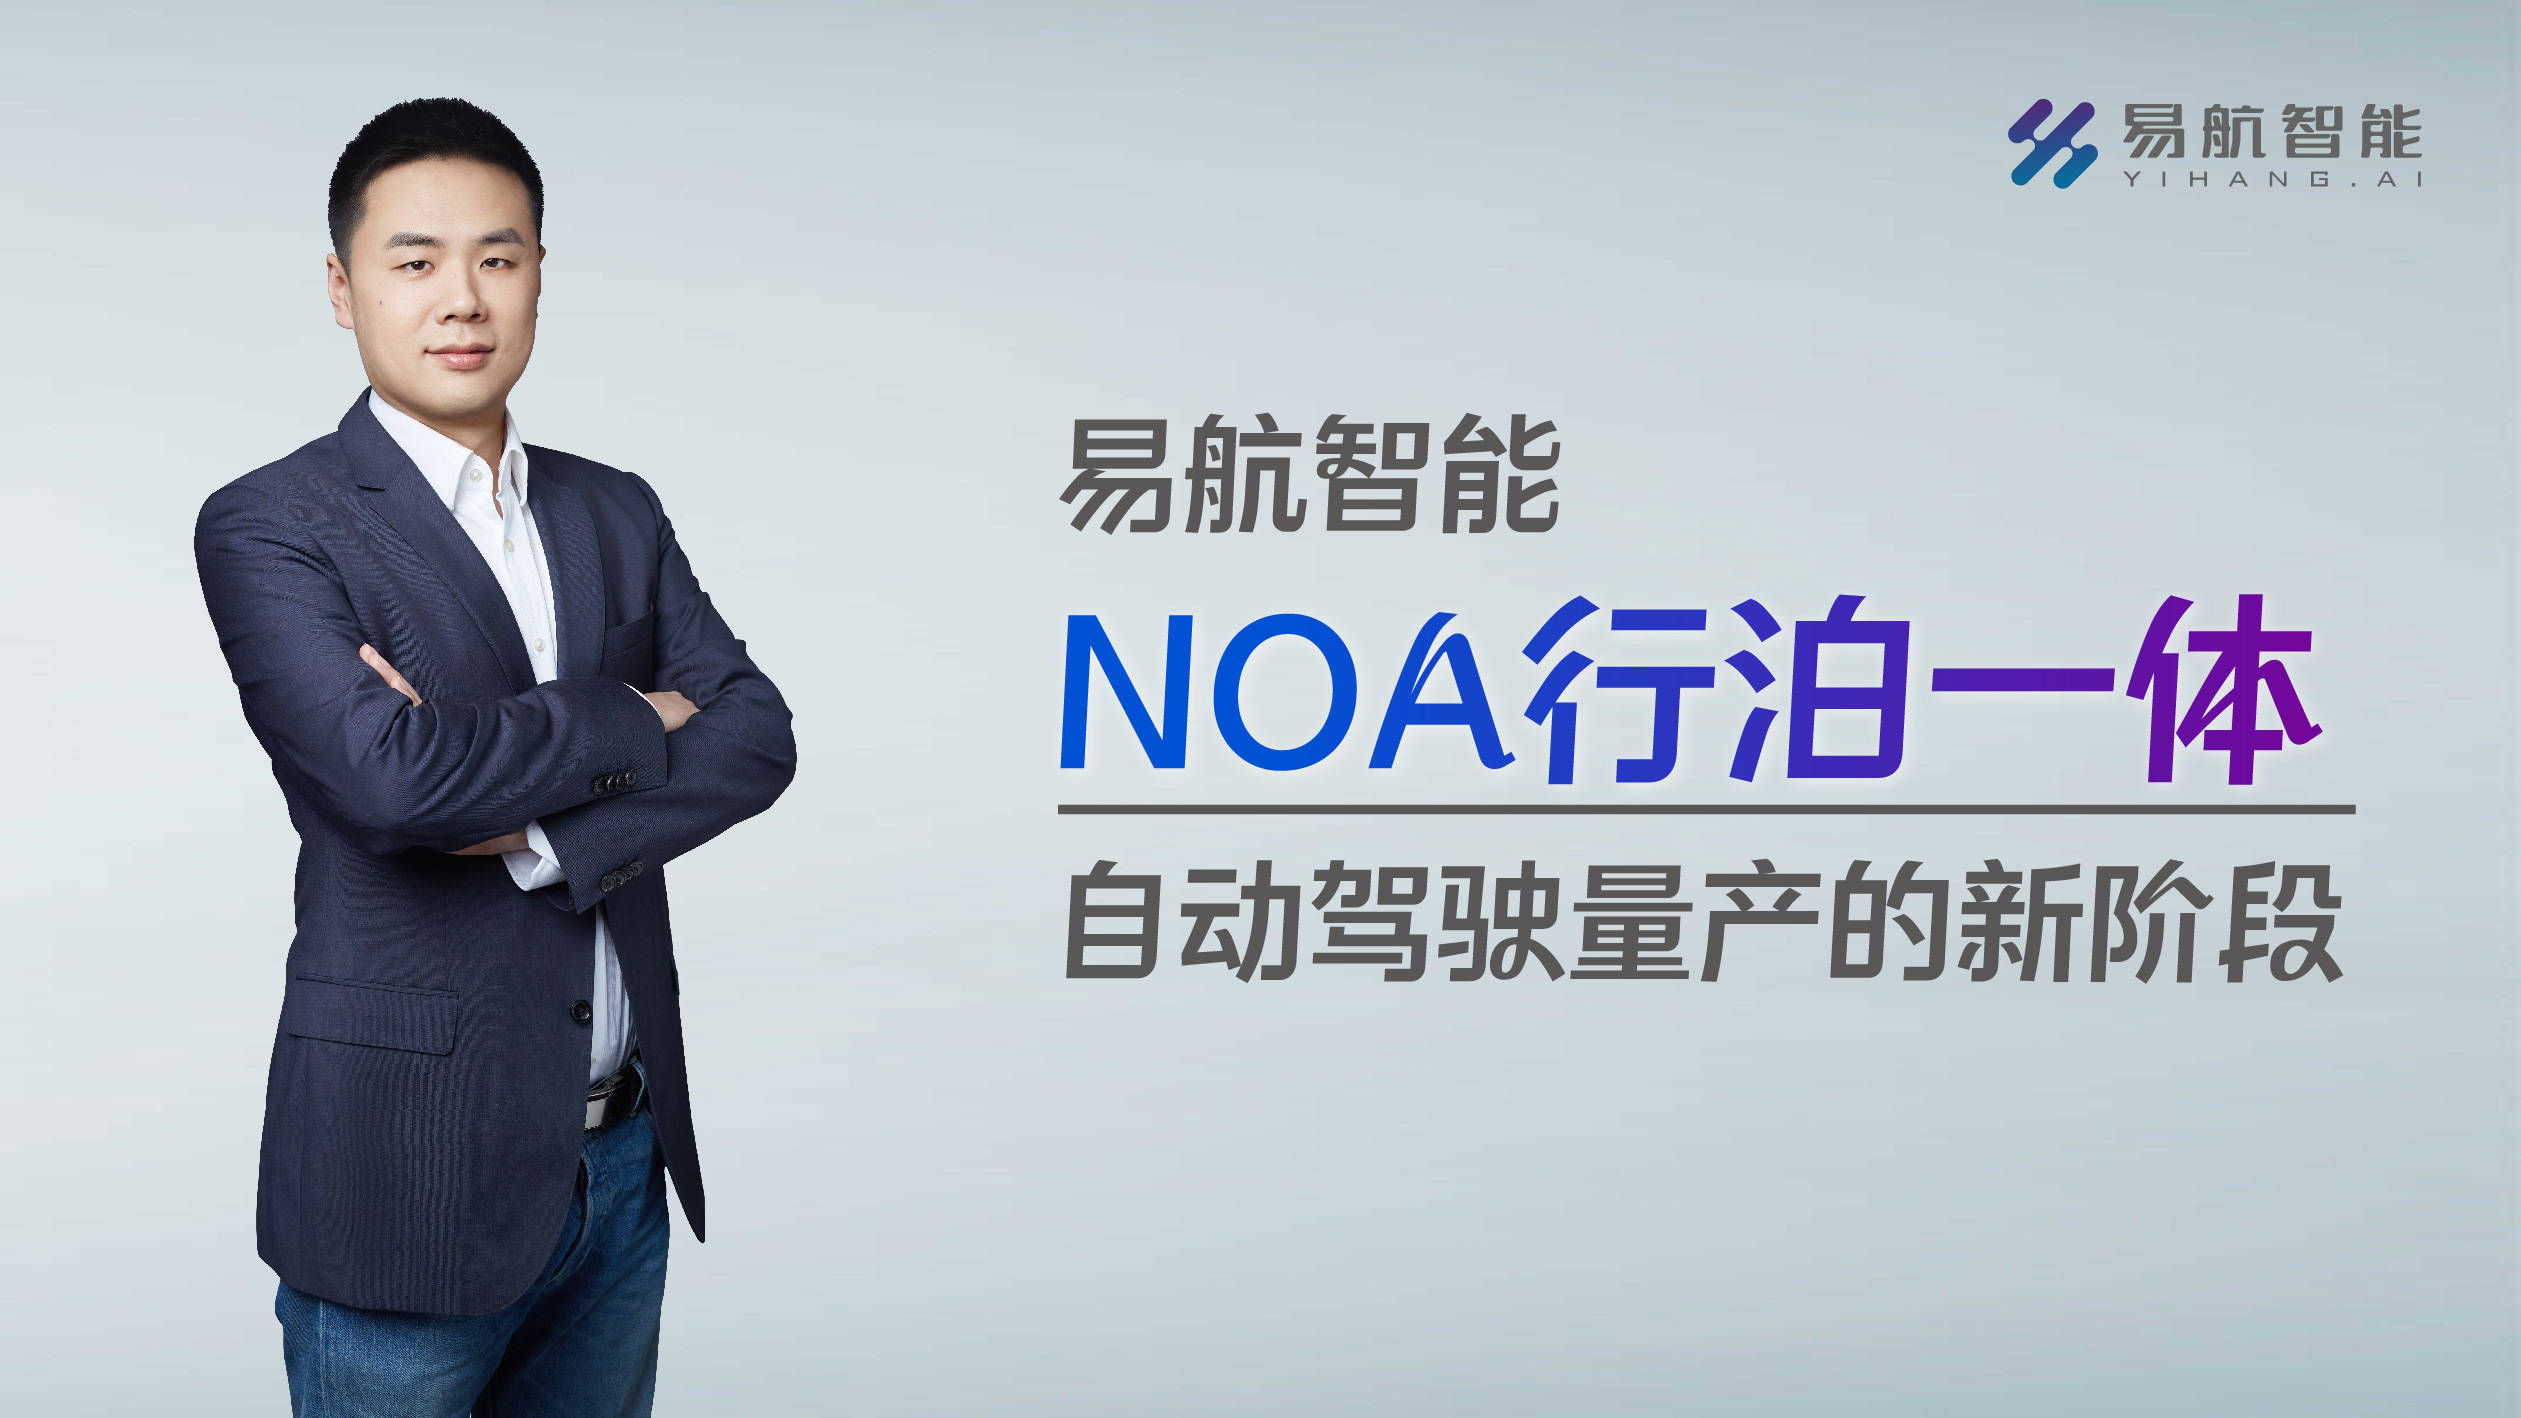 易航智能CEO陈禹行：NOA量产是自动驾驶发展关键点 16TOPS方案成本低至数千元